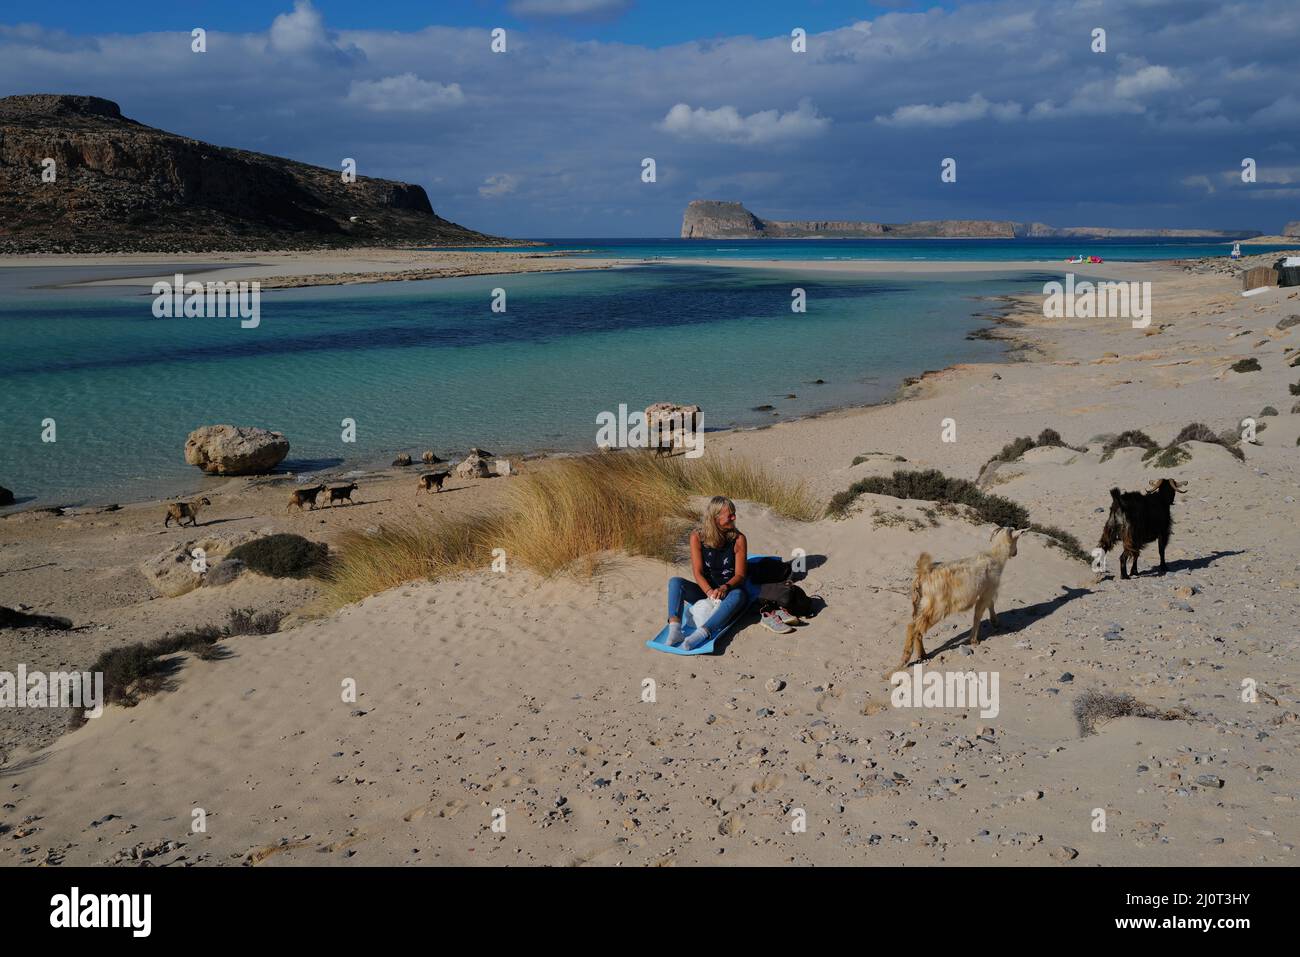 Plage de Balos, l'une des plus belles et uniques plages de Crète, Grèce Banque D'Images